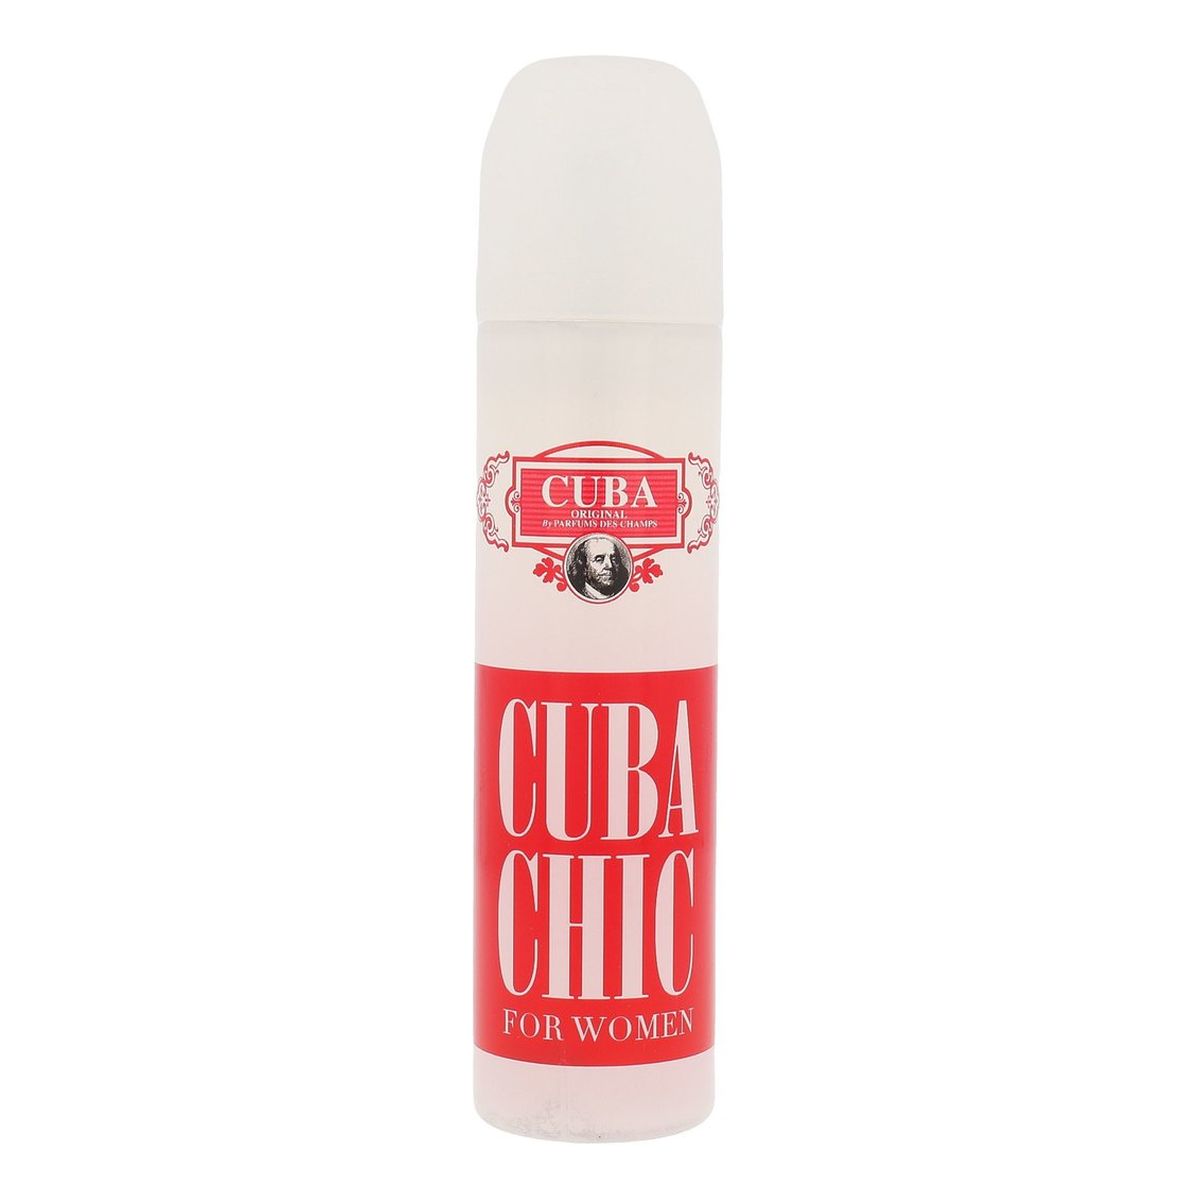 Cuba Original Cuba Chic Woda perfumowana spray 100ml